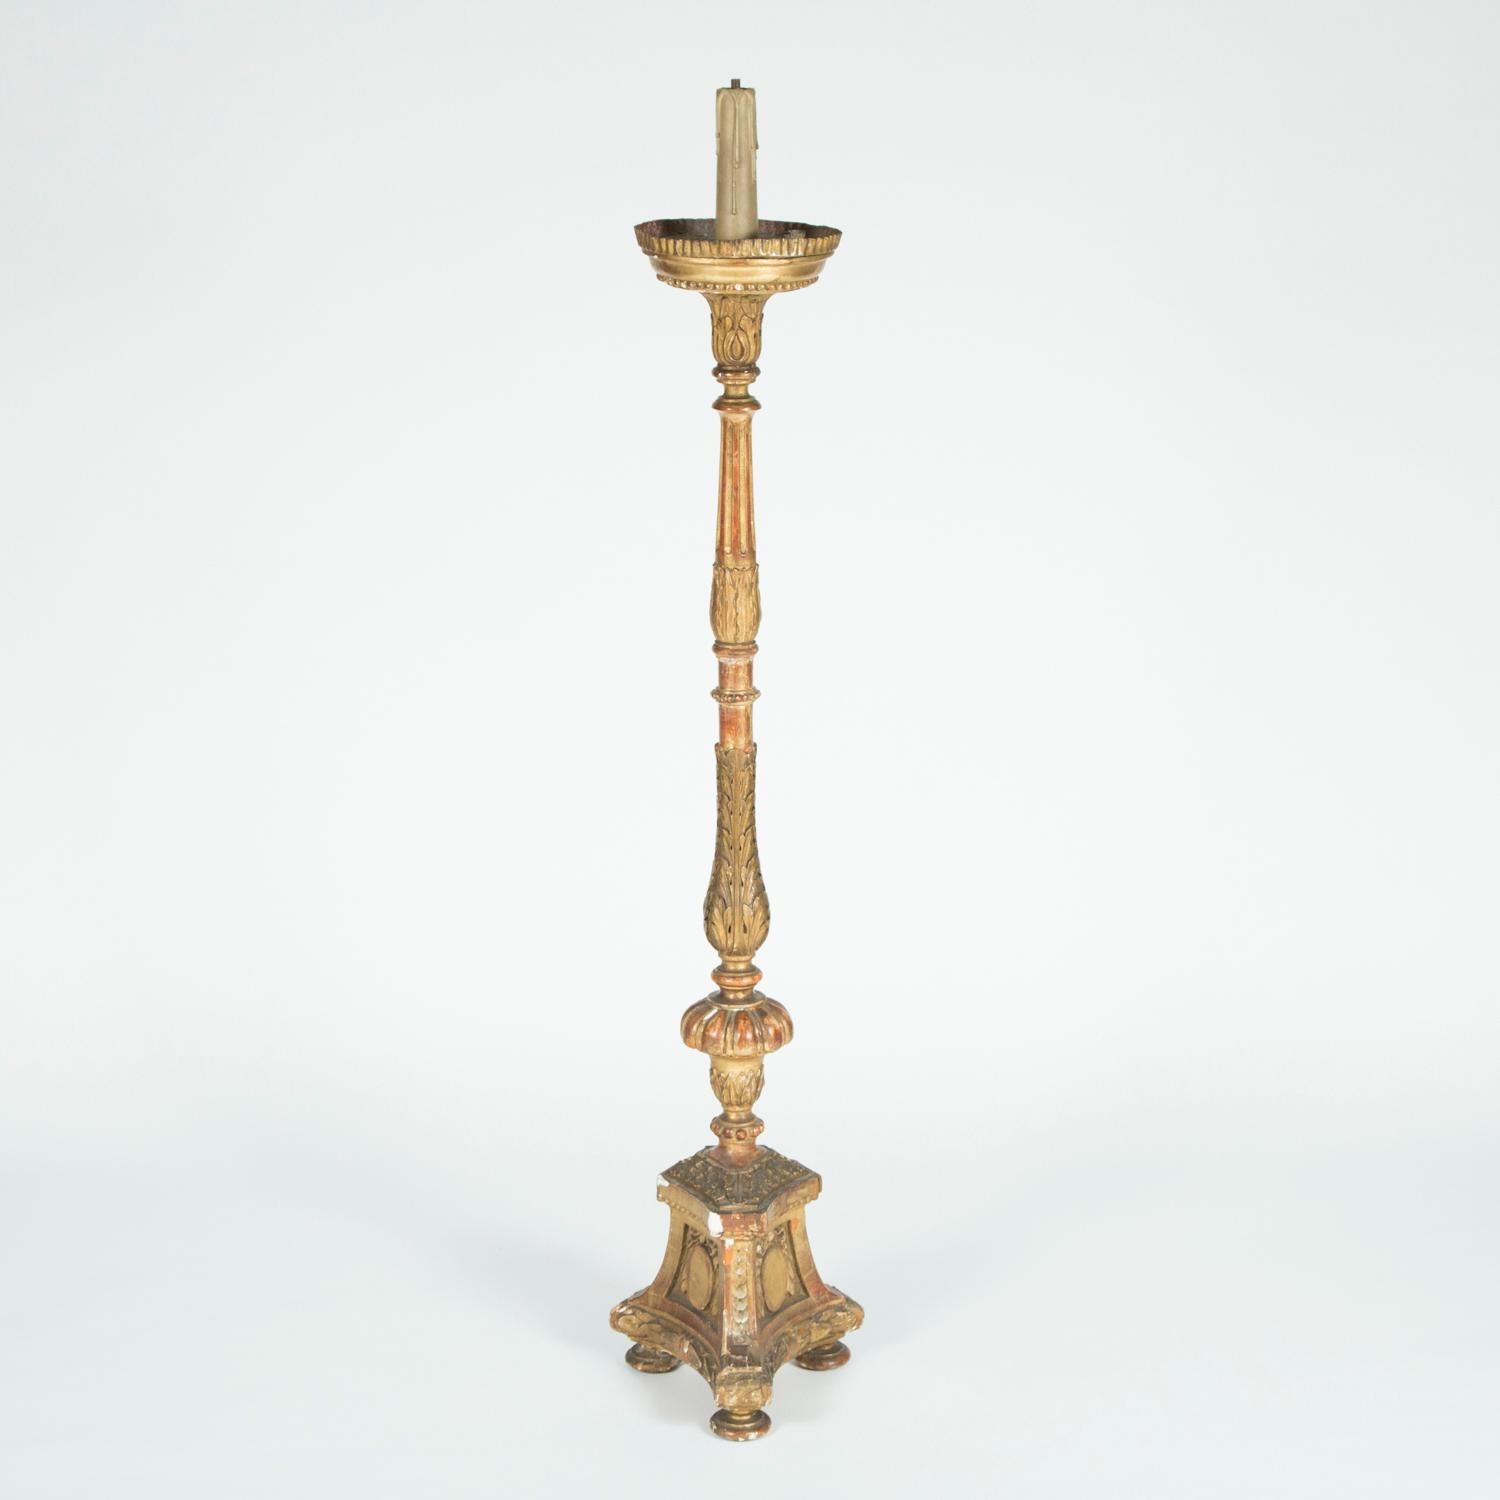 Paire de candélabres italiens en bois doré du milieu du XIXe siècle, avec dorure d'origine. Les tiges sont sculptées de motifs floraux et la base triforme est ornée d'un cartouche de chaque côté. 

Les candélabres ont été préalablement câblés pour